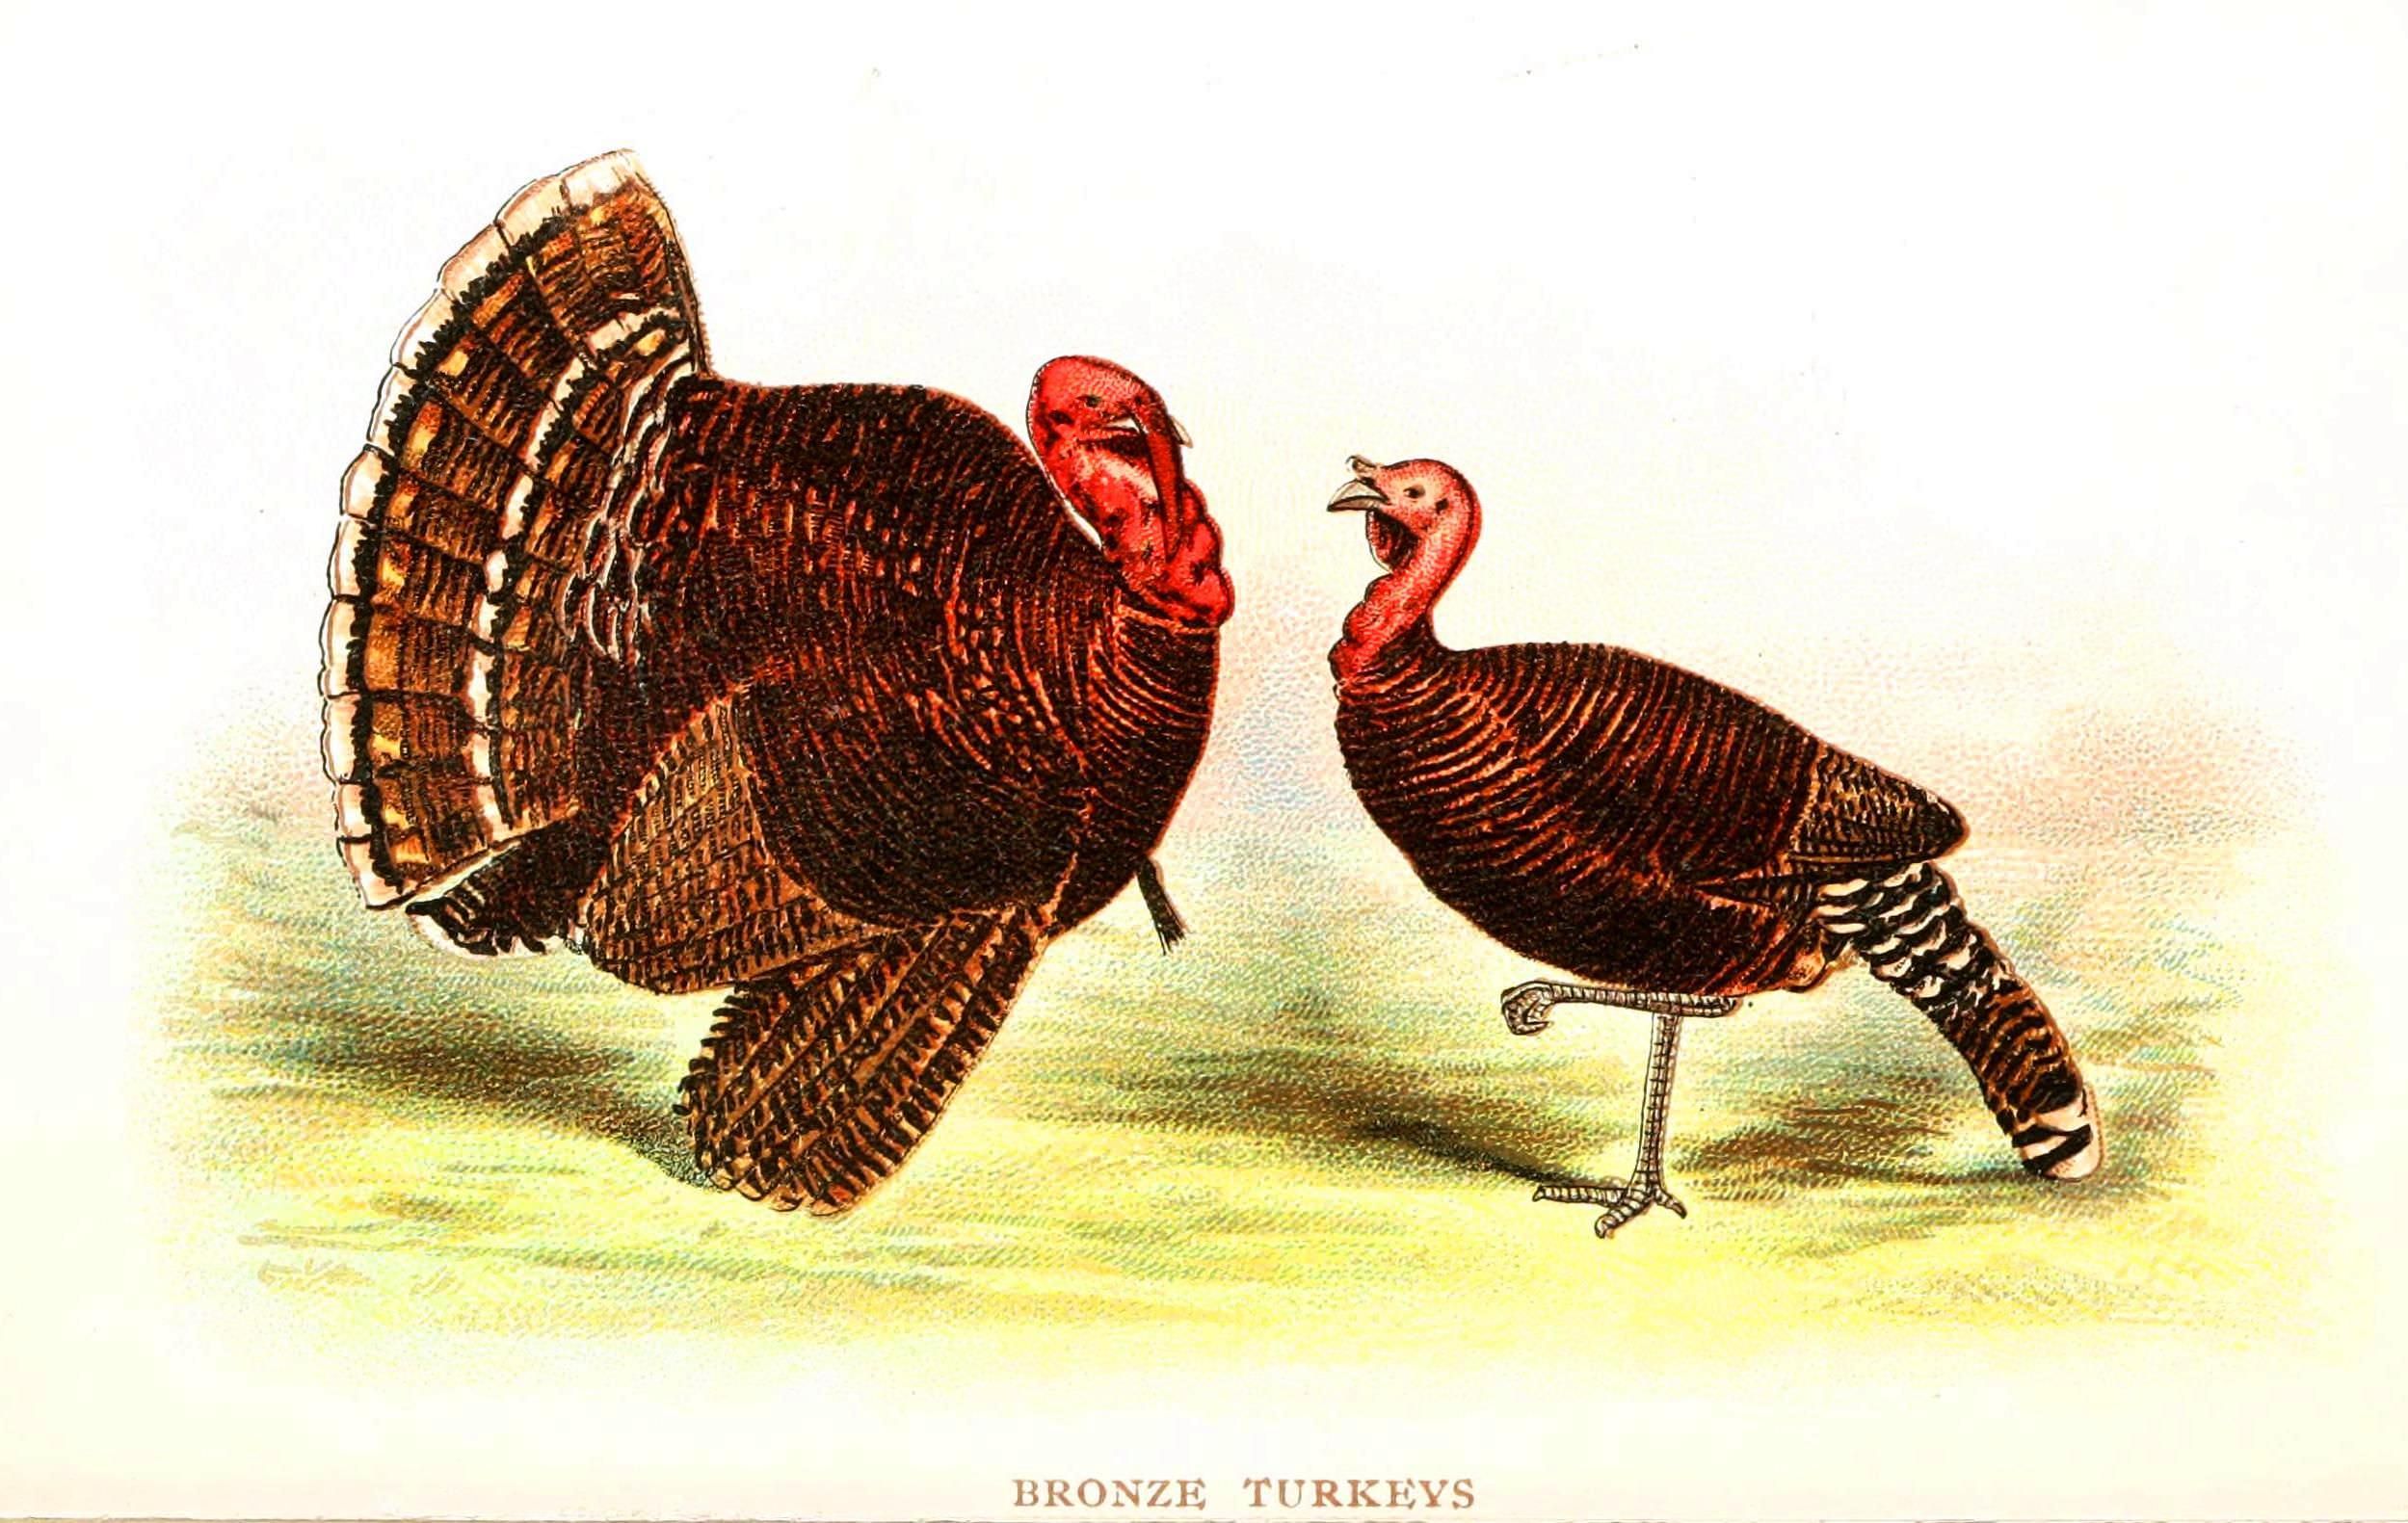 Bronze turkeys